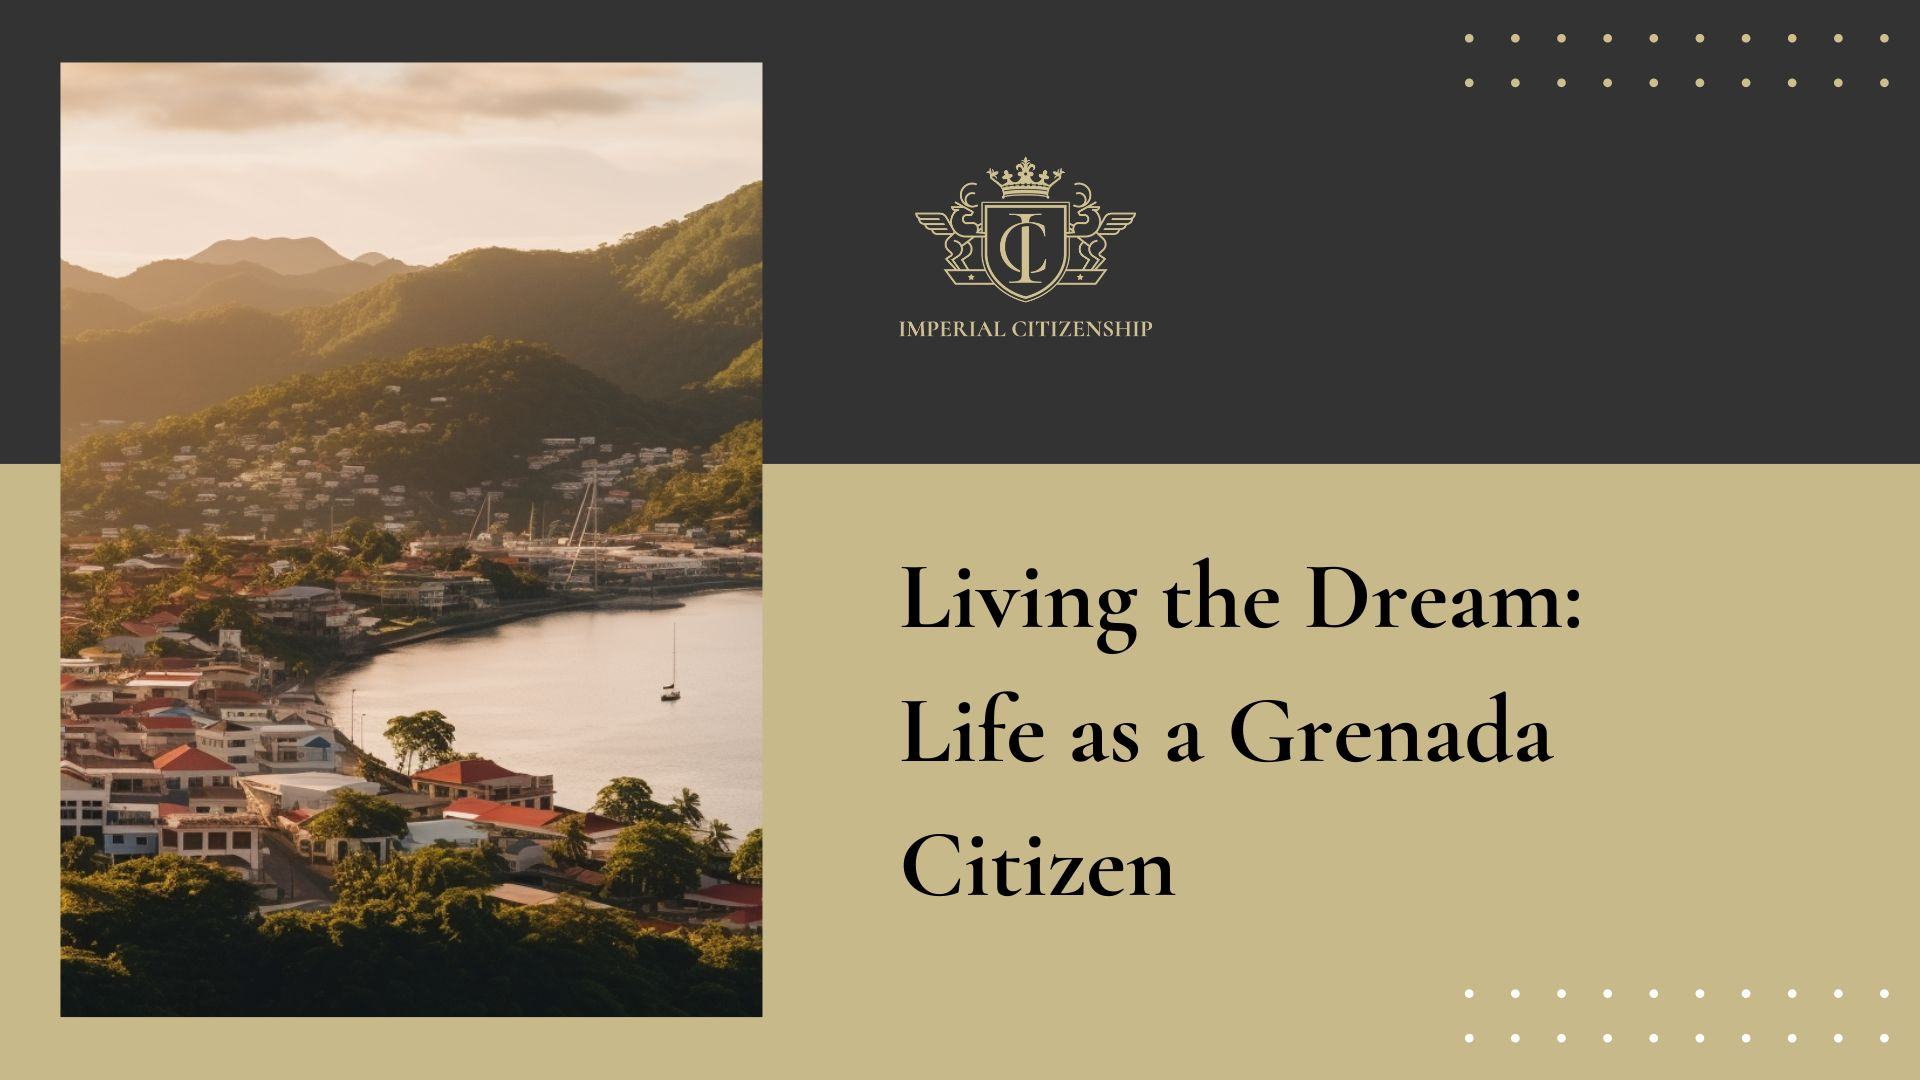 Life as a Grenada Citizen